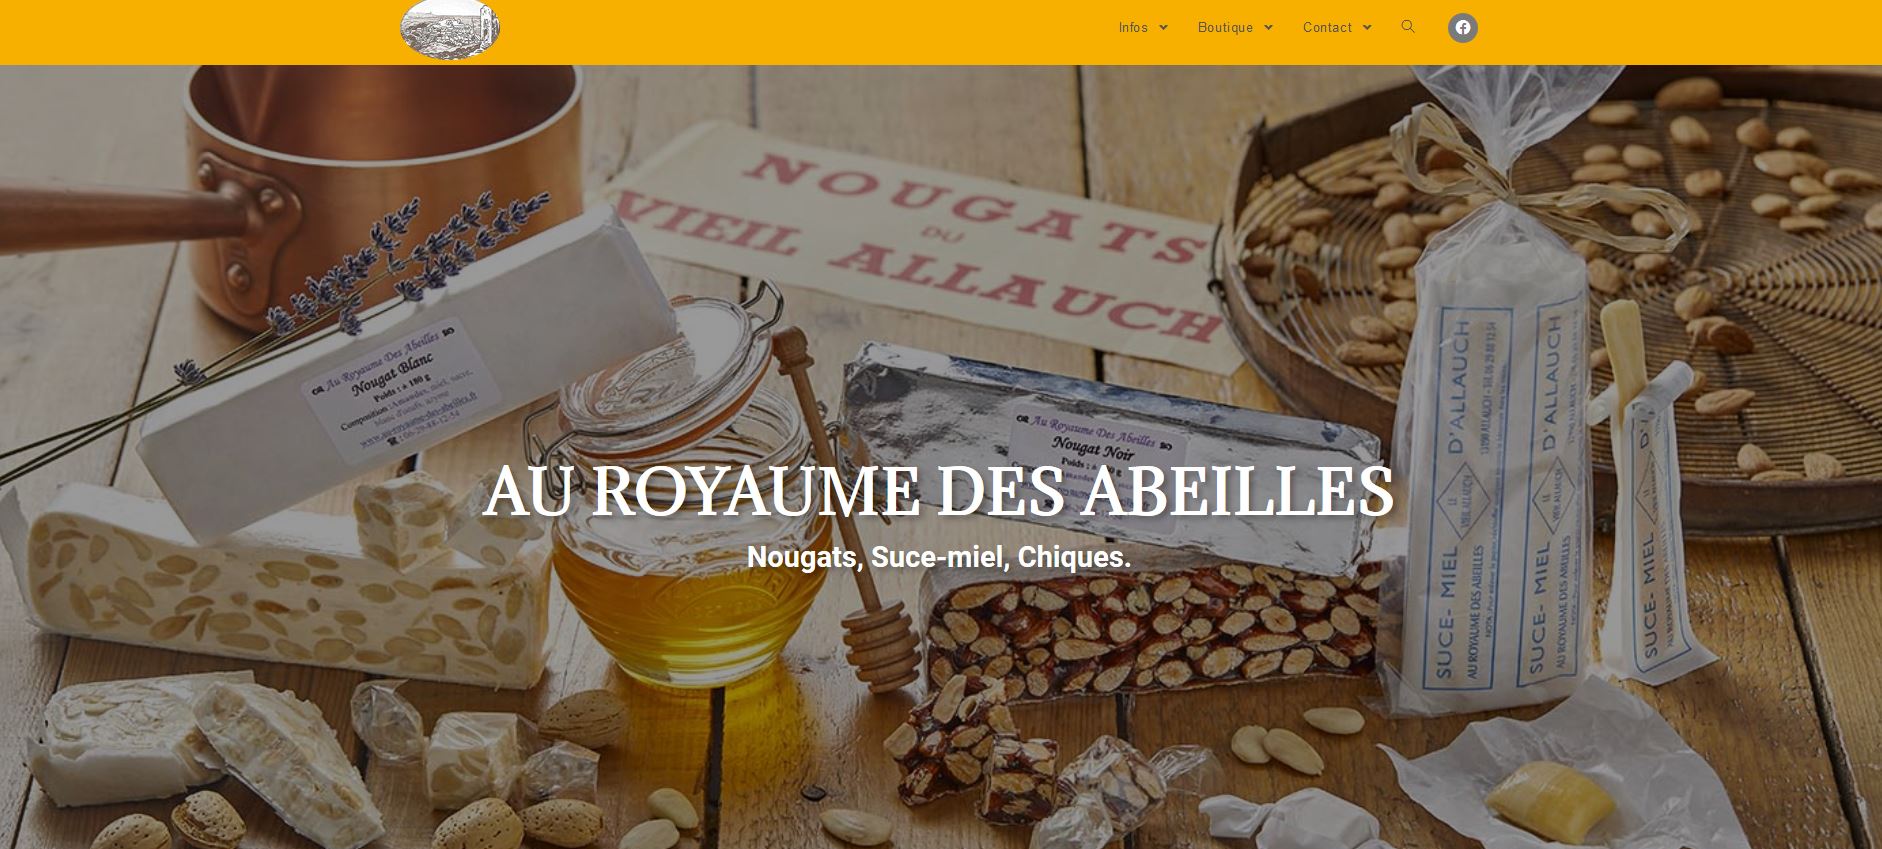 Read more about the article Au royaume des abeilles